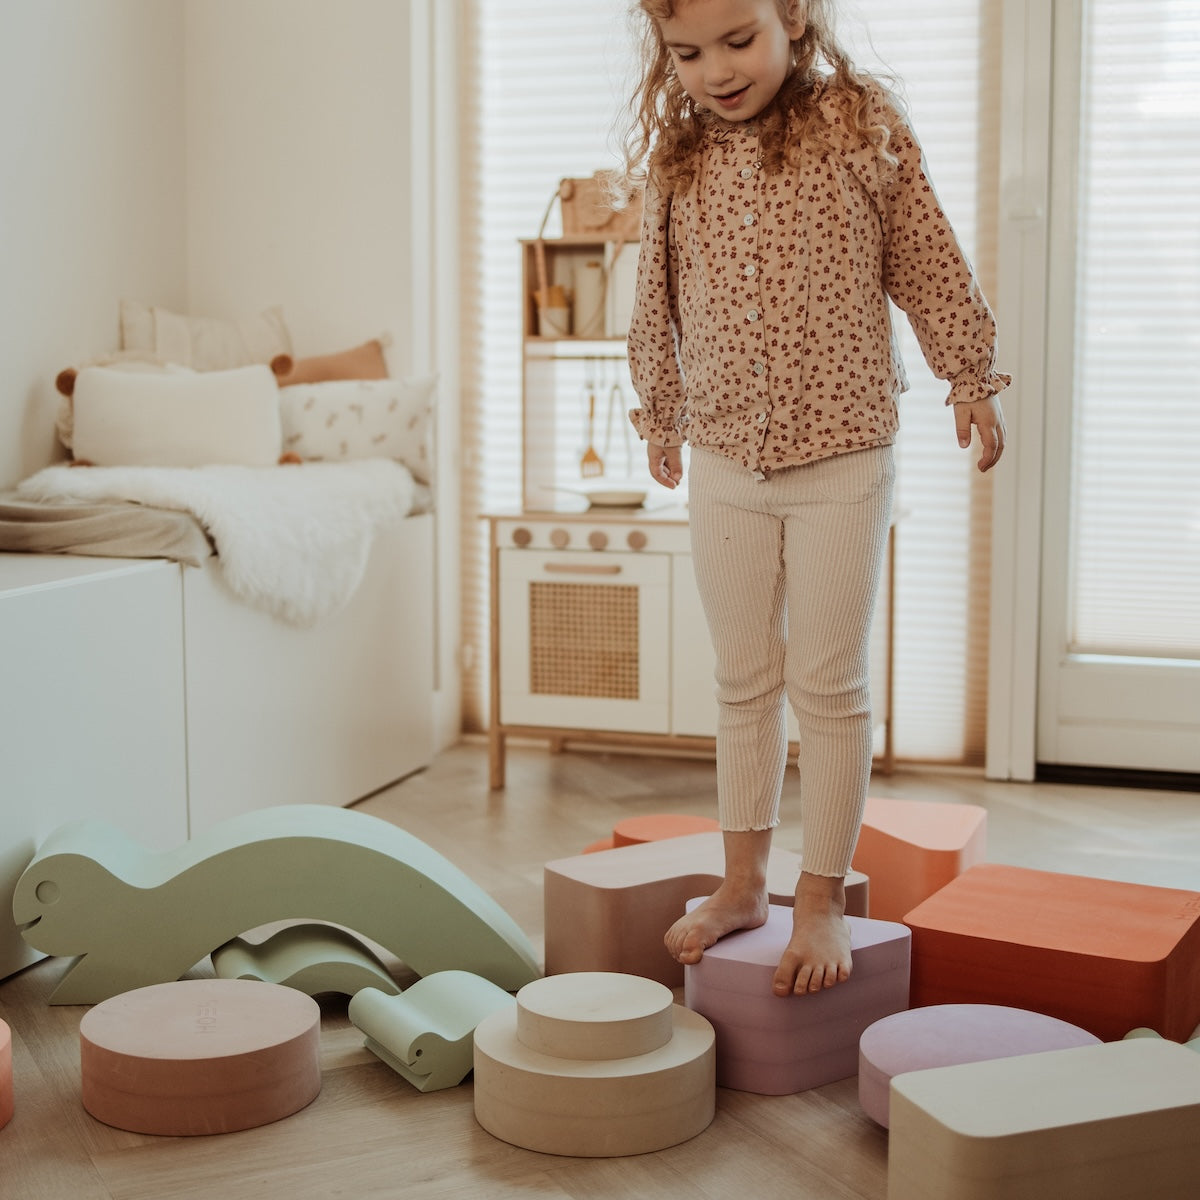 Met het Moes Play Rectangle earth speelblok leert je kindje creatief spelen en wordt de motoriek op een originele manier gestimuleerd. Het speelblok is multifunctioneel en kan op verschillende manieren worden gebruikt om mee te spelen. VanZus